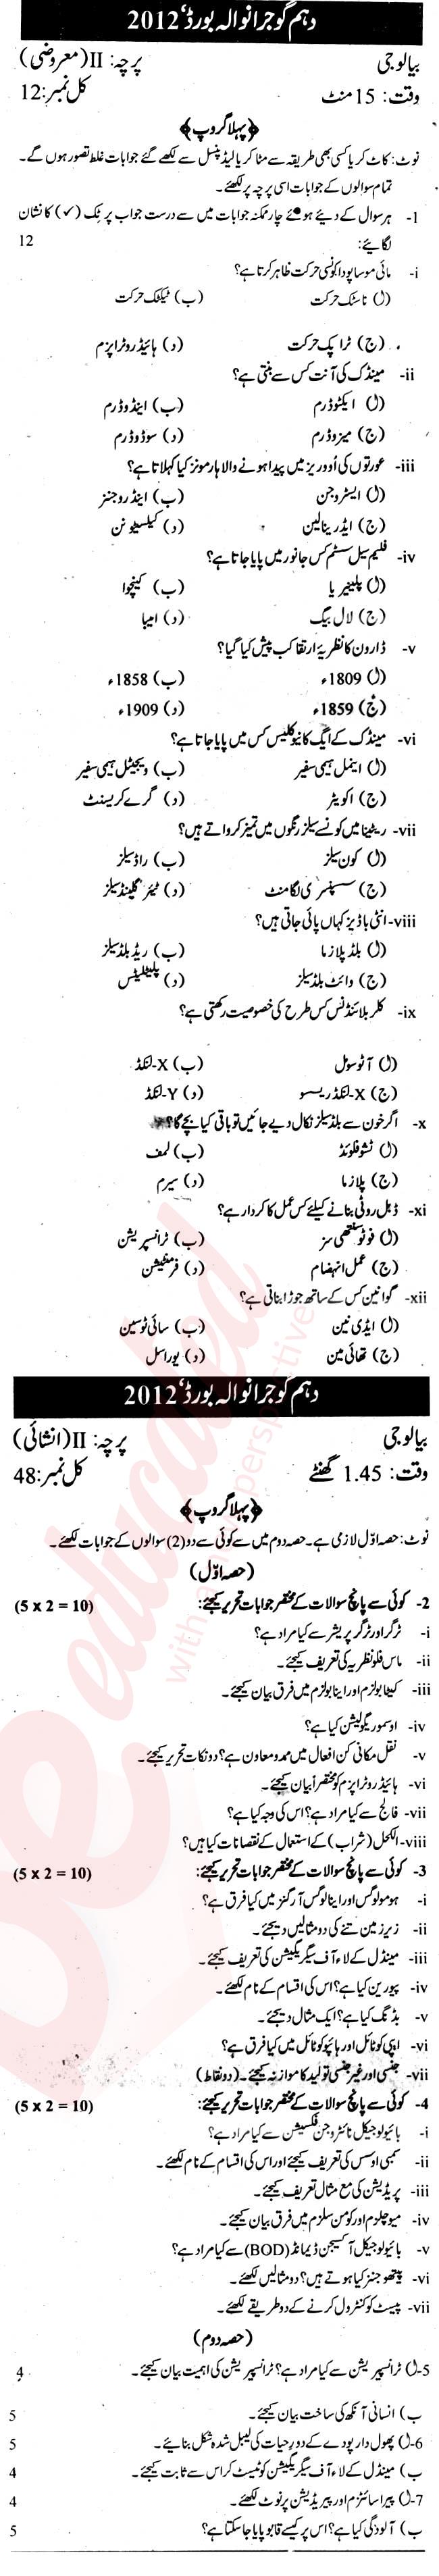 Biology 10th Urdu Medium Past Paper Group 1 BISE Gujranwala 2012